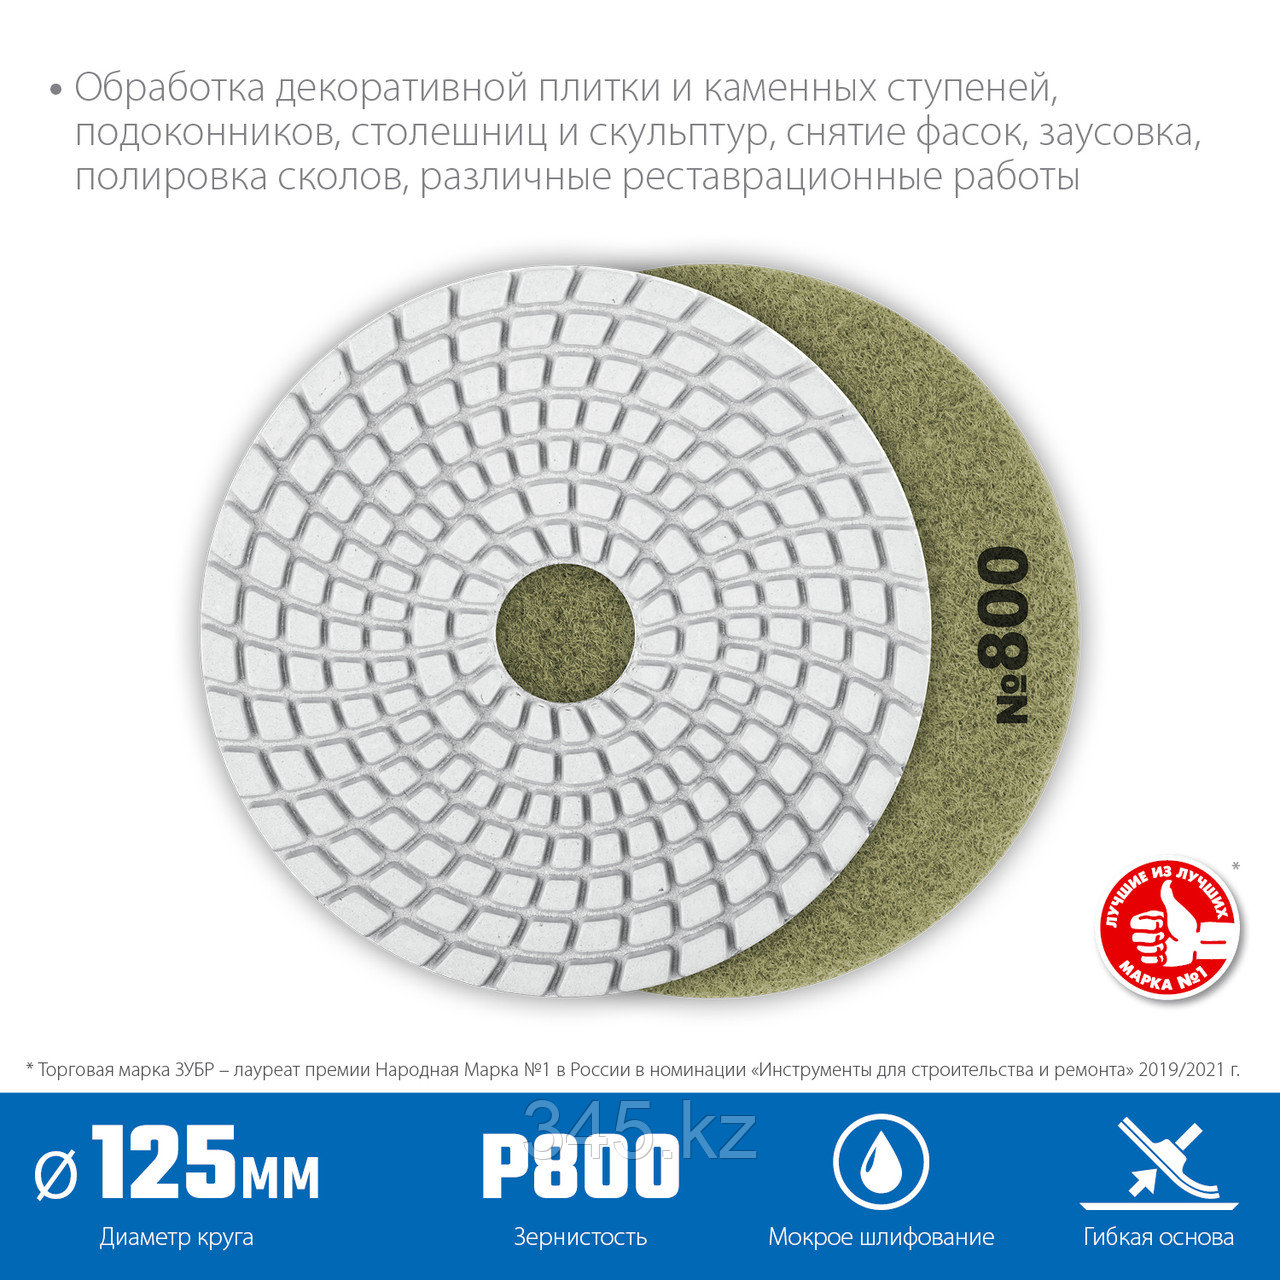 Алмазный гибкий шлифовальный круг ЗУБР 125мм №800 (Черепашка) для мокрого шлифования